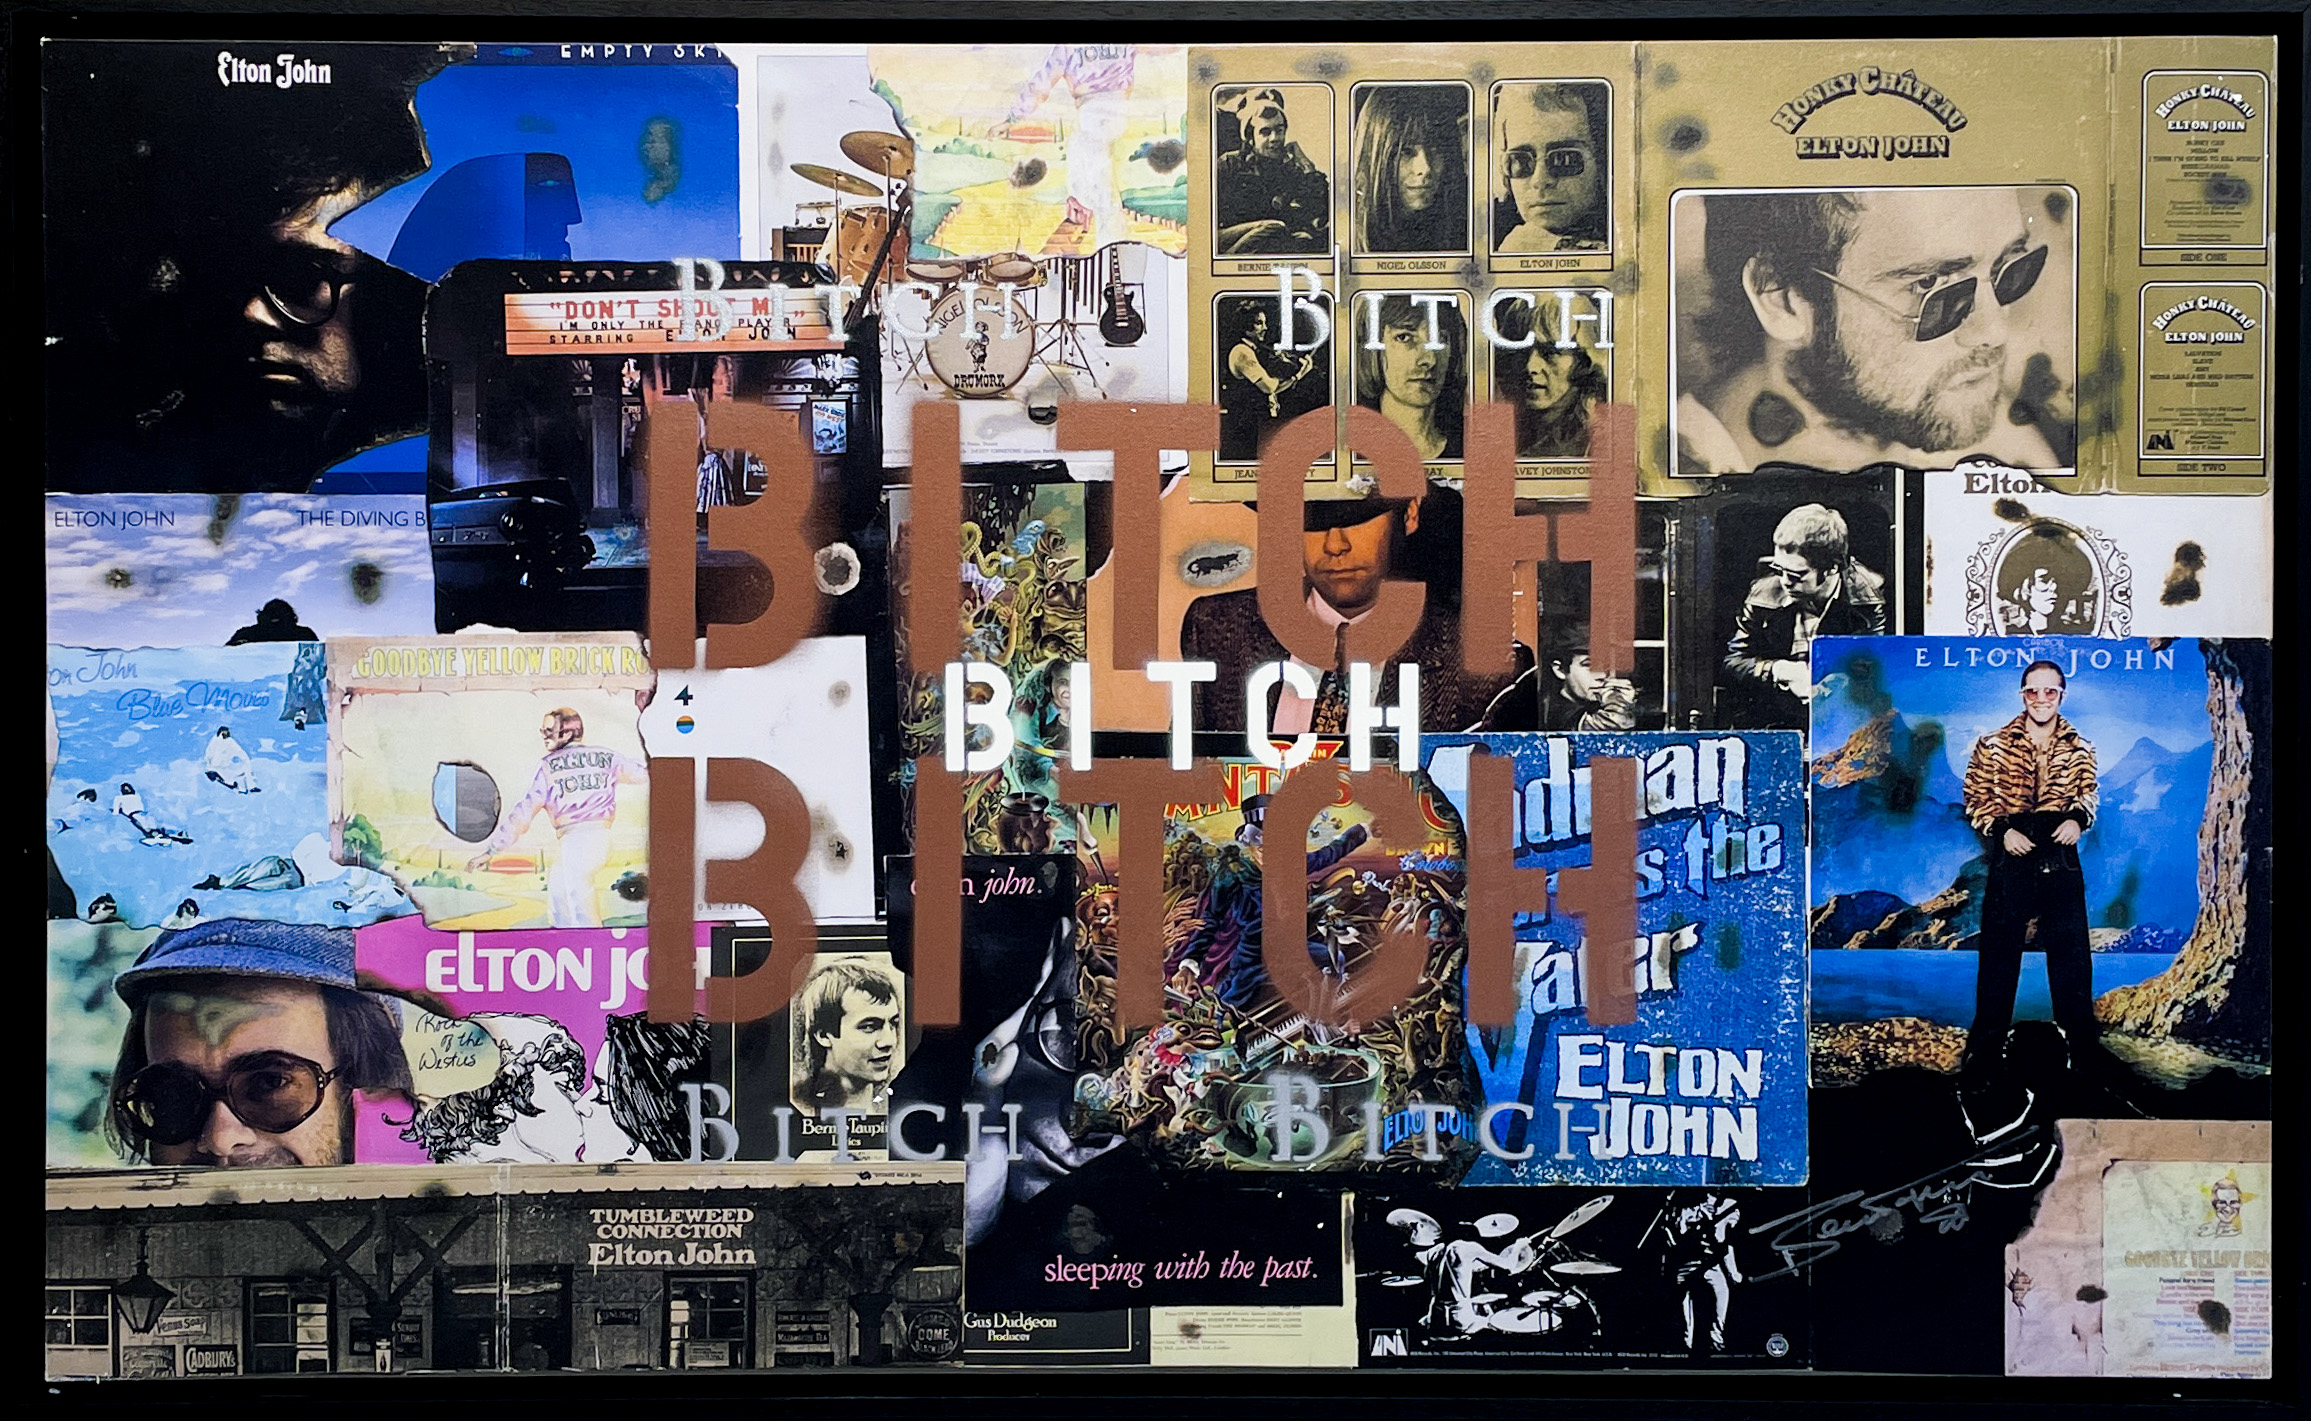 Bernie Taupin Bitch, Bitch, Bitch (Framed)